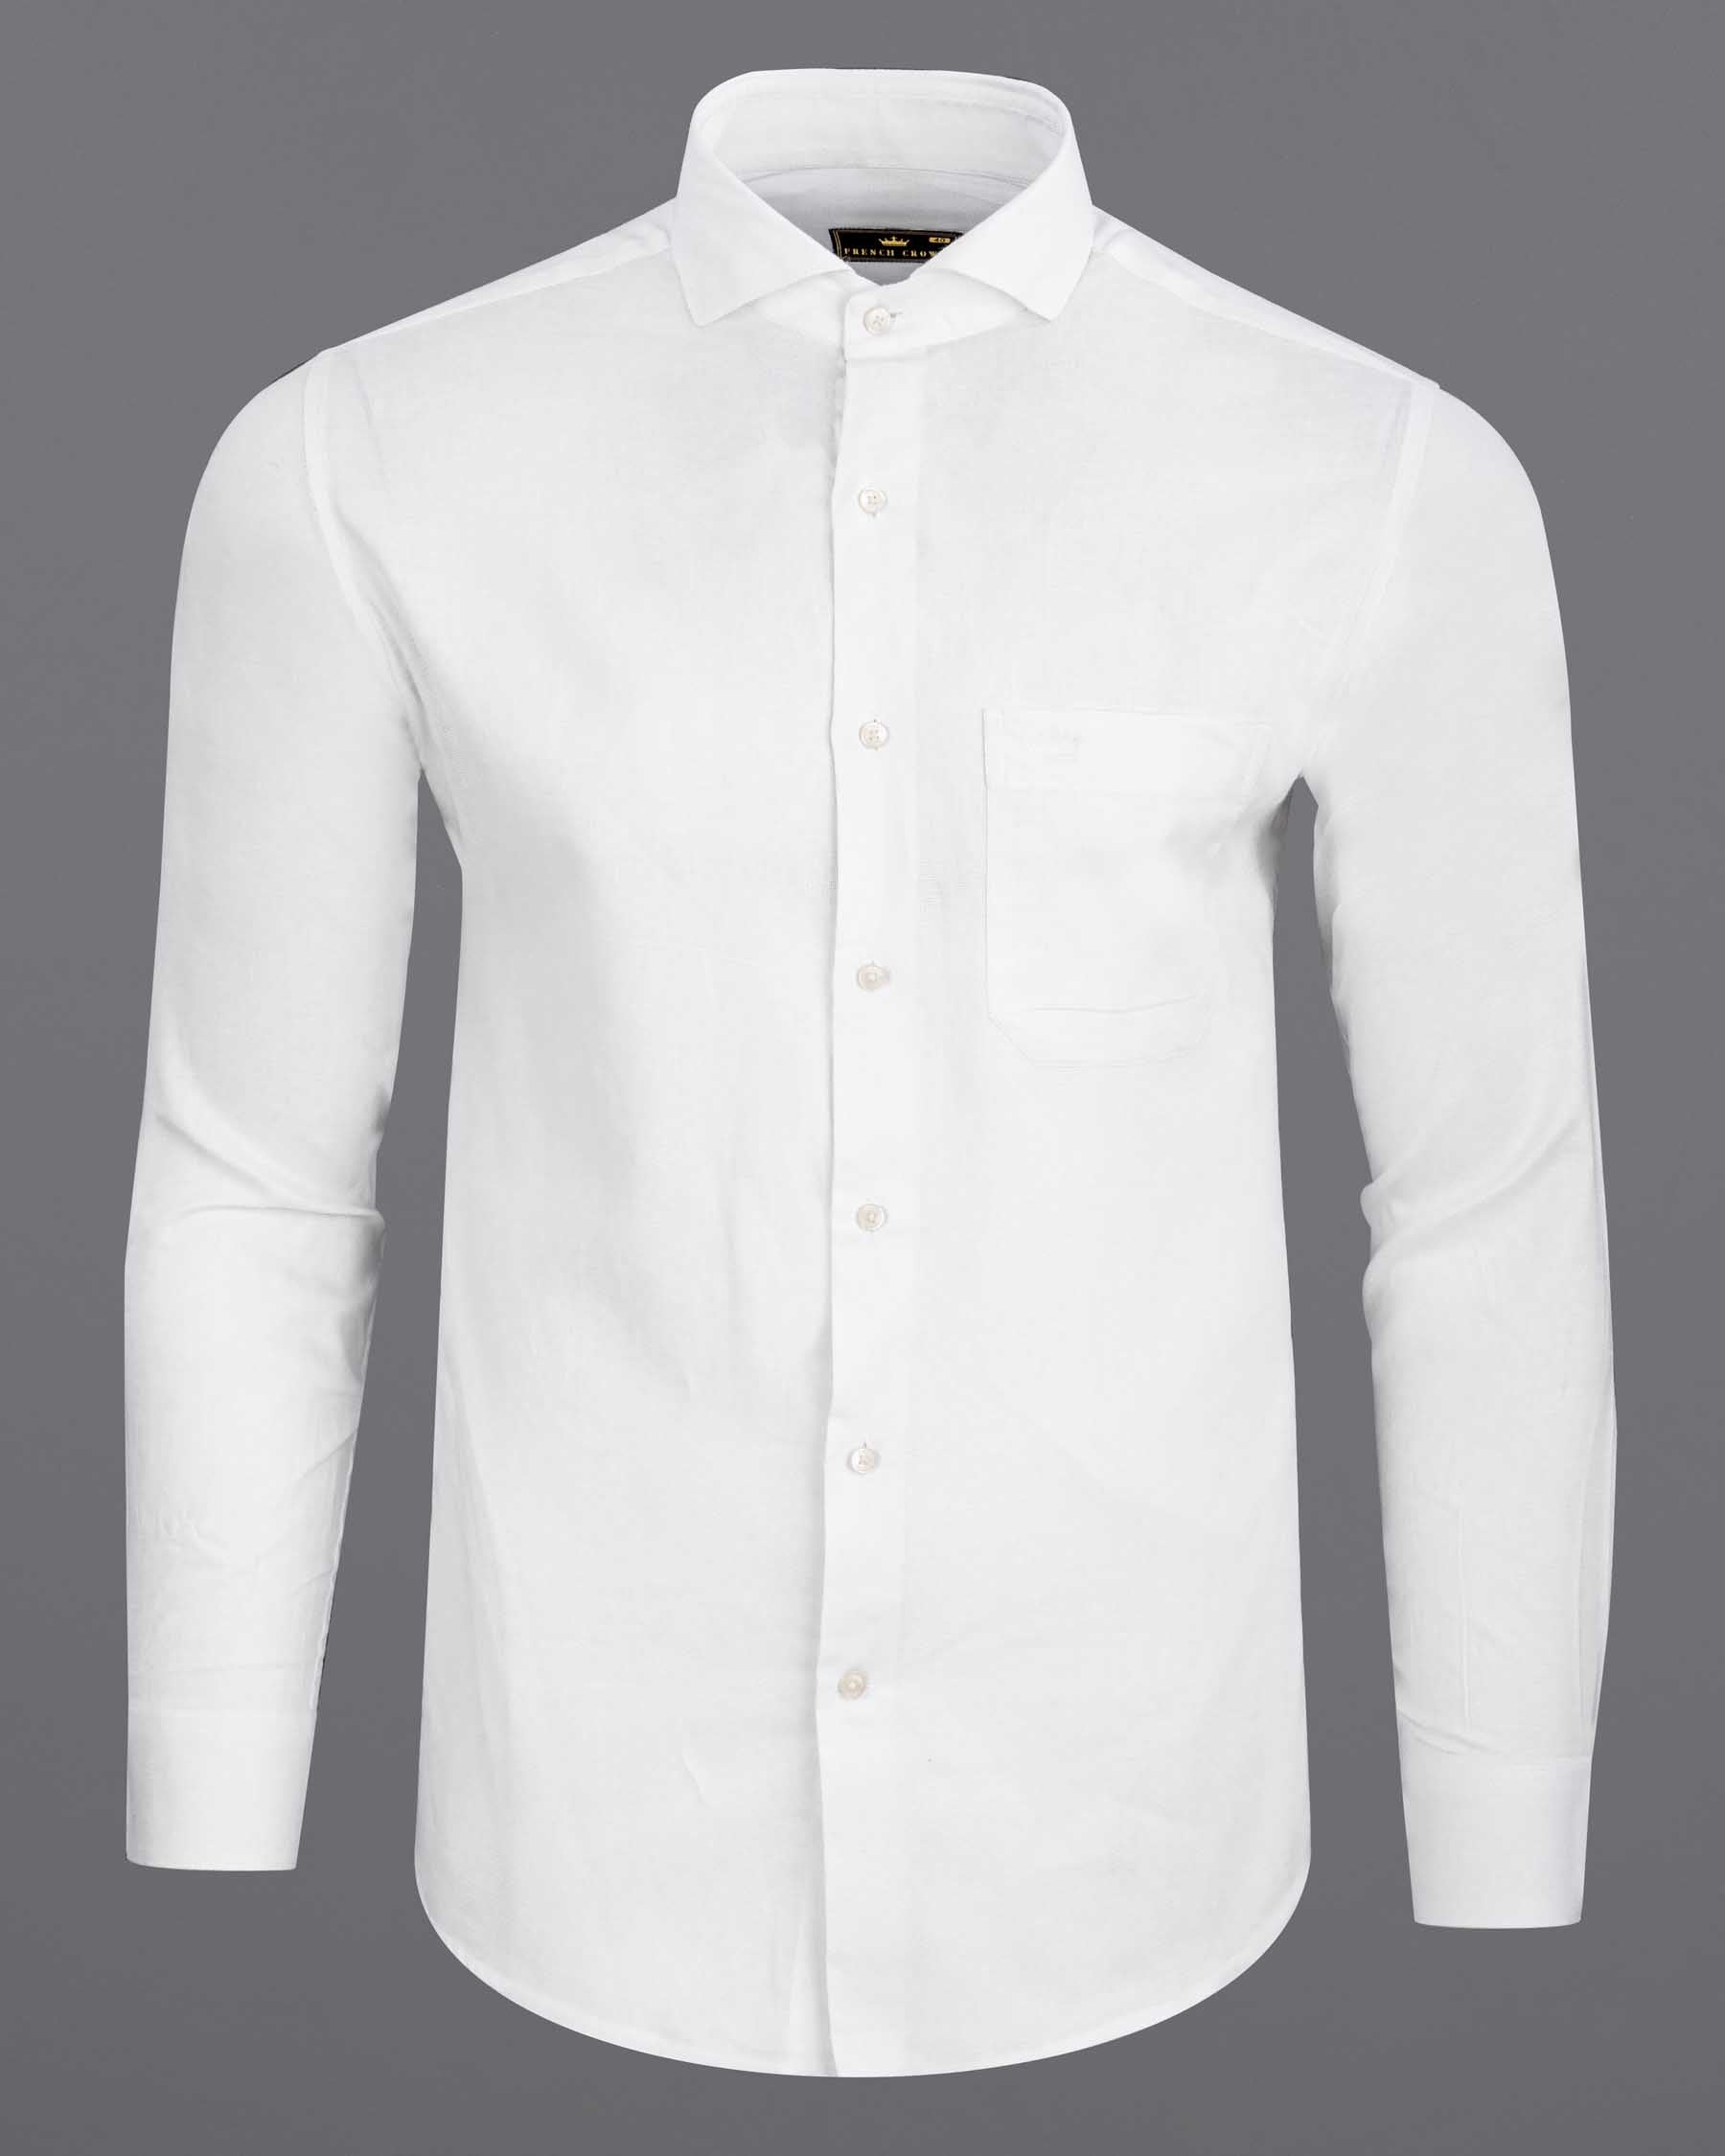 Bright White Dobby Textured Premium Giza Cotton Shirt 6354-CA-38,6354-CA-H-38,6354-CA-39,6354-CA-H-39,6354-CA-40,6354-CA-H-40,6354-CA-42,6354-CA-H-42,6354-CA-44,6354-CA-H-44,6354-CA-46,6354-CA-H-46,6354-CA-48,6354-CA-H-48,6354-CA-50,6354-CA-H-50,6354-CA-52,6354-CA-H-52